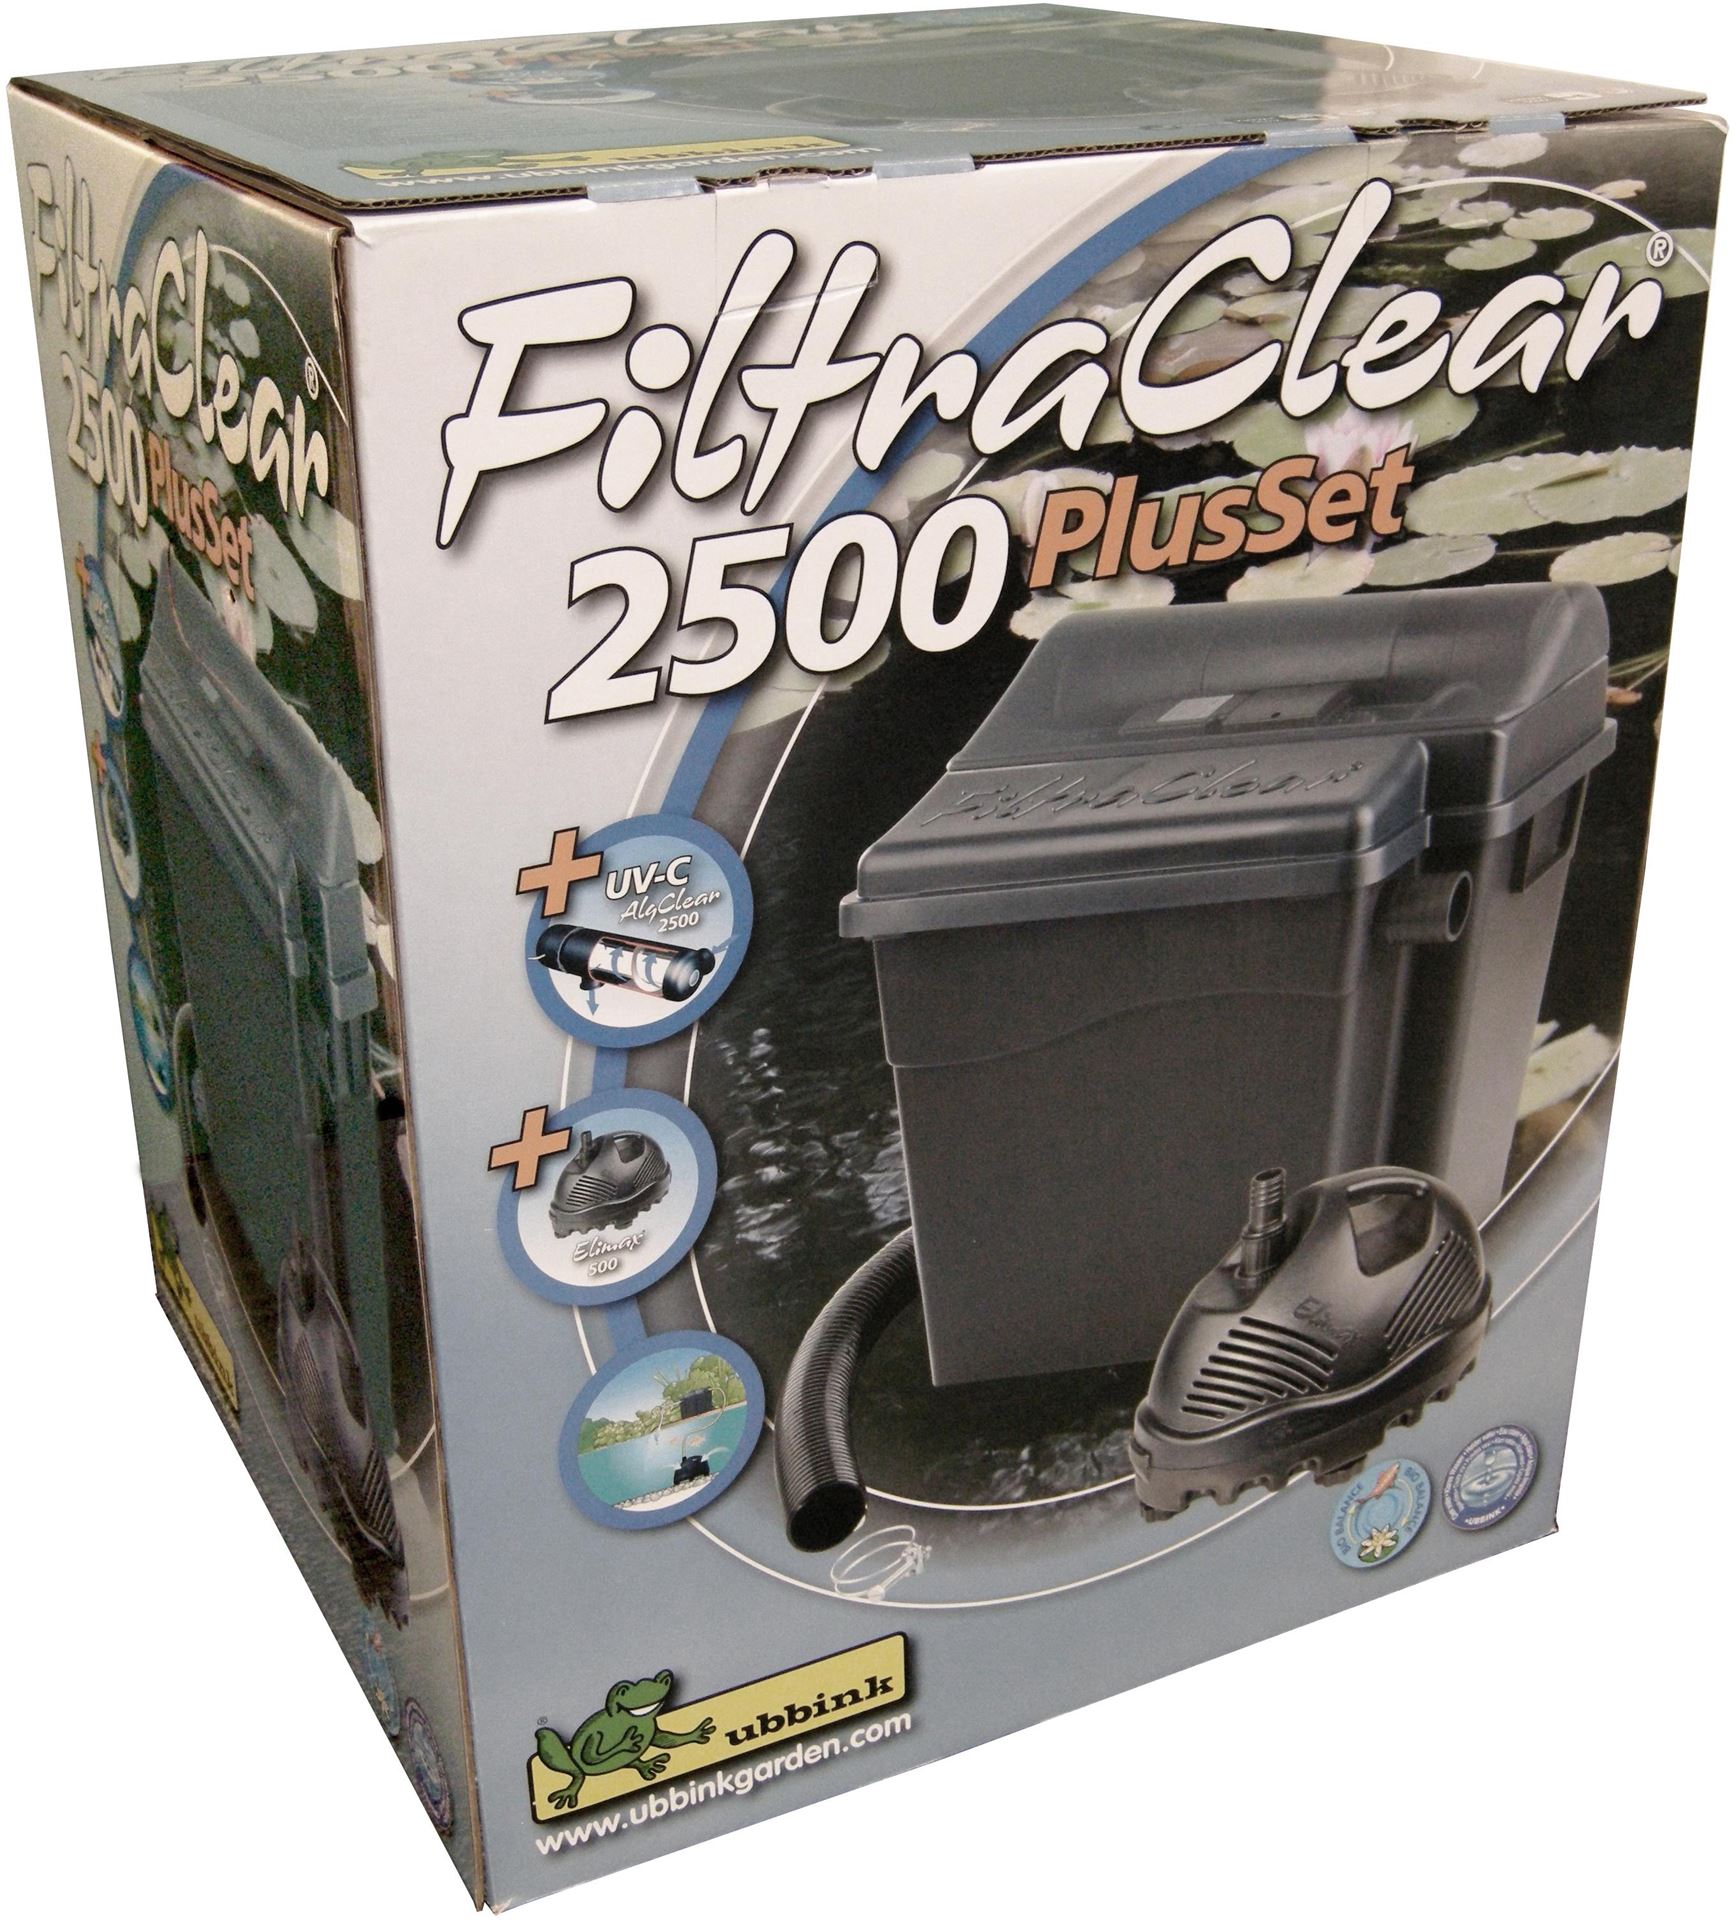 FiltraClear-2500-PlusSet-biologisch-mechanische-filtersysteem-met-2-kamers-UVC-5w-Elimax-500-filterm